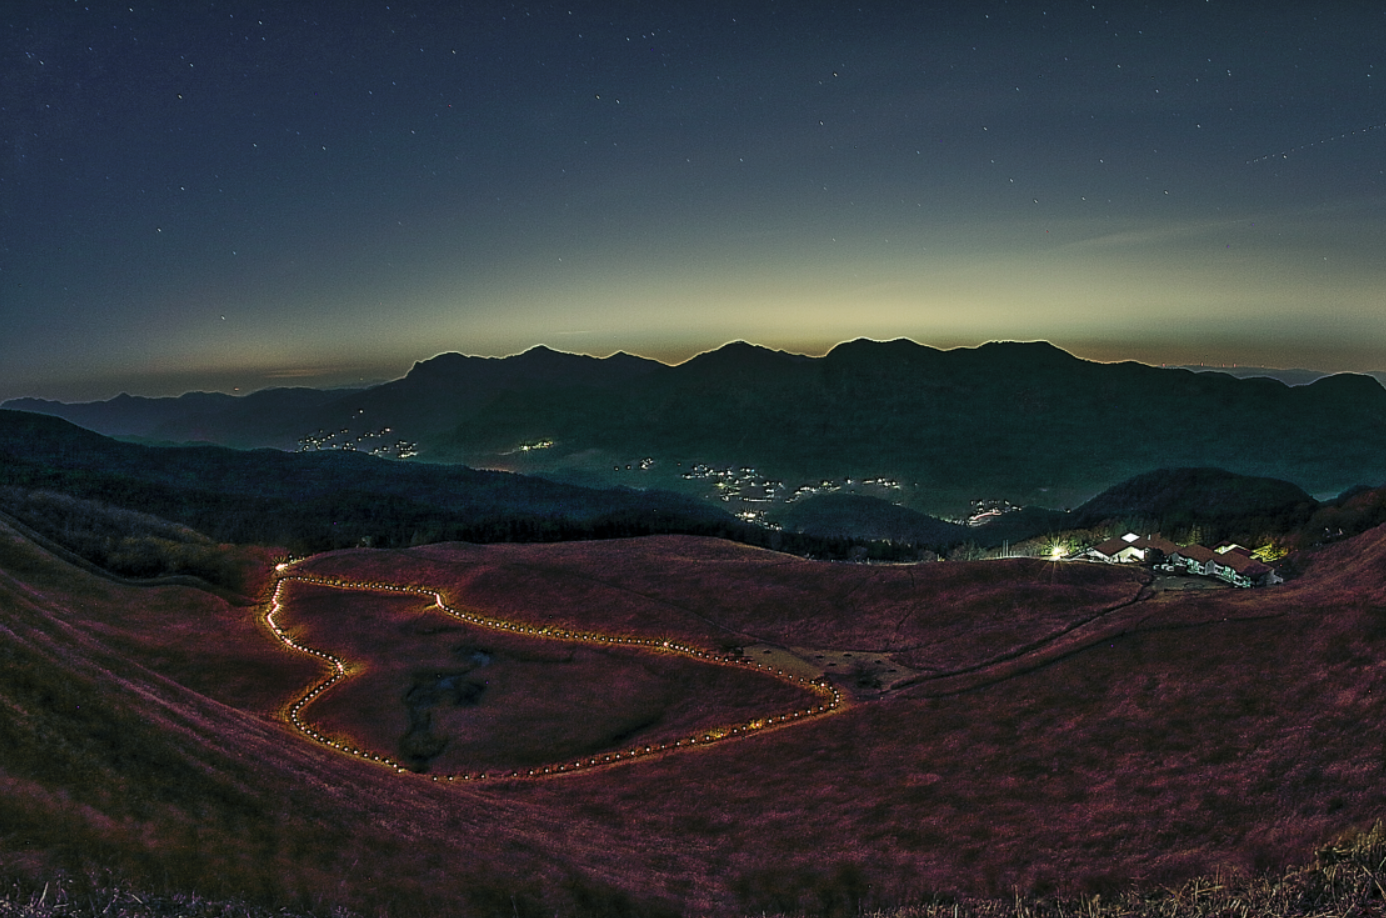 亀山峠から望む夜景